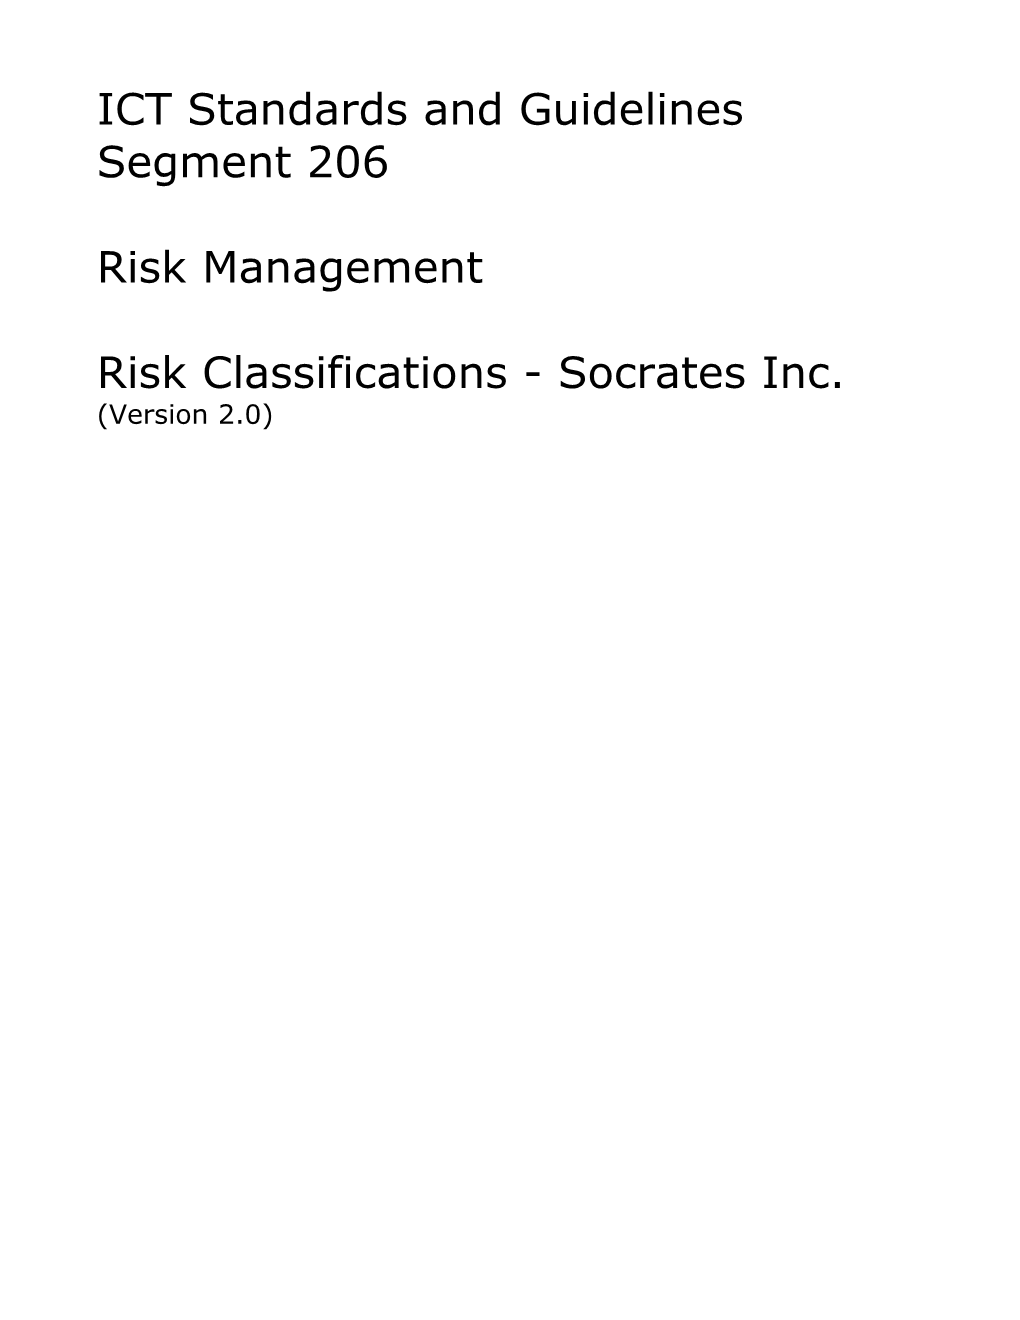 Project Risk Profile, Version 2.0